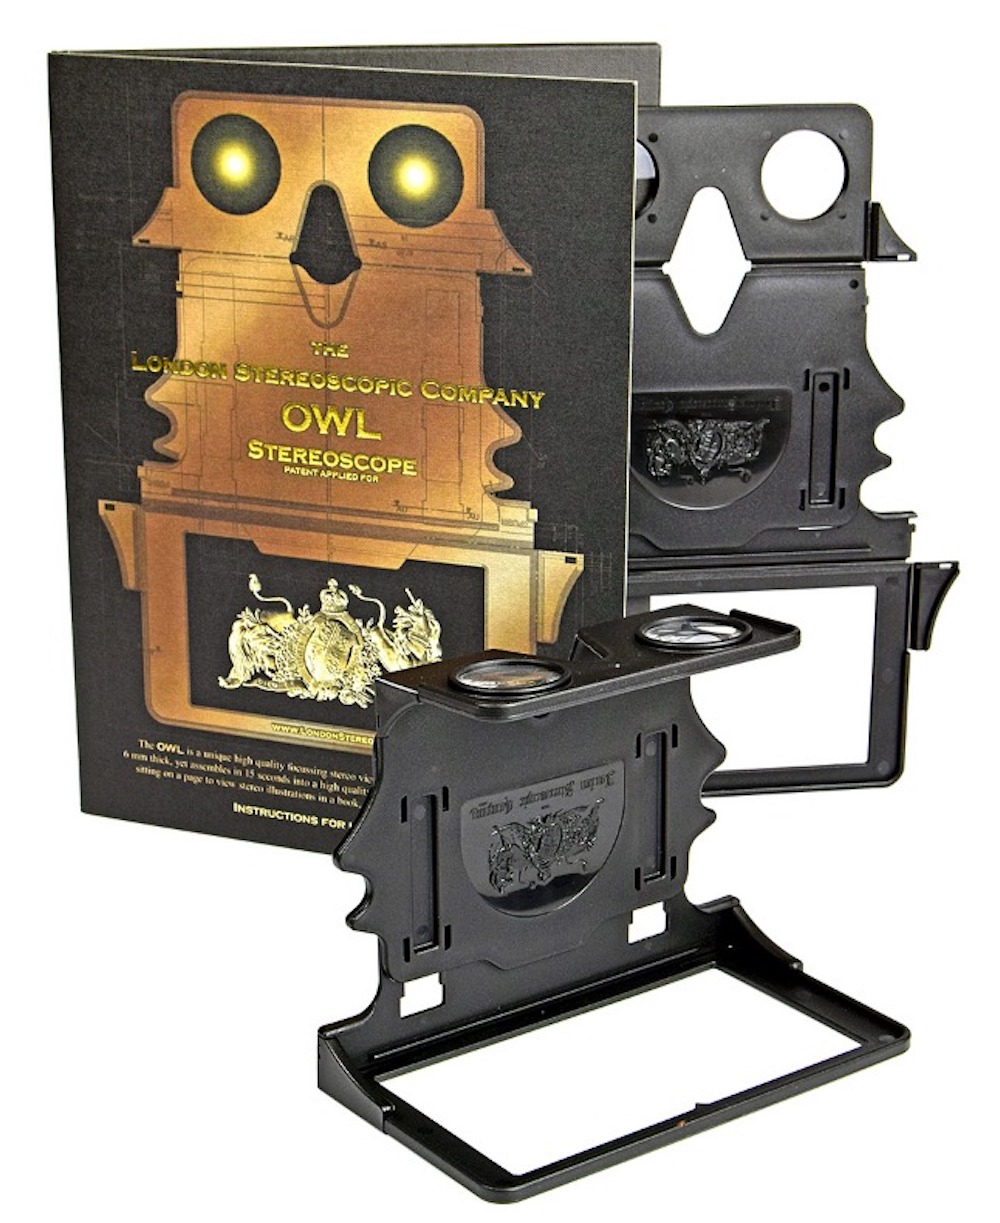 The London Stereoscopic Company's OWL Stereoscope